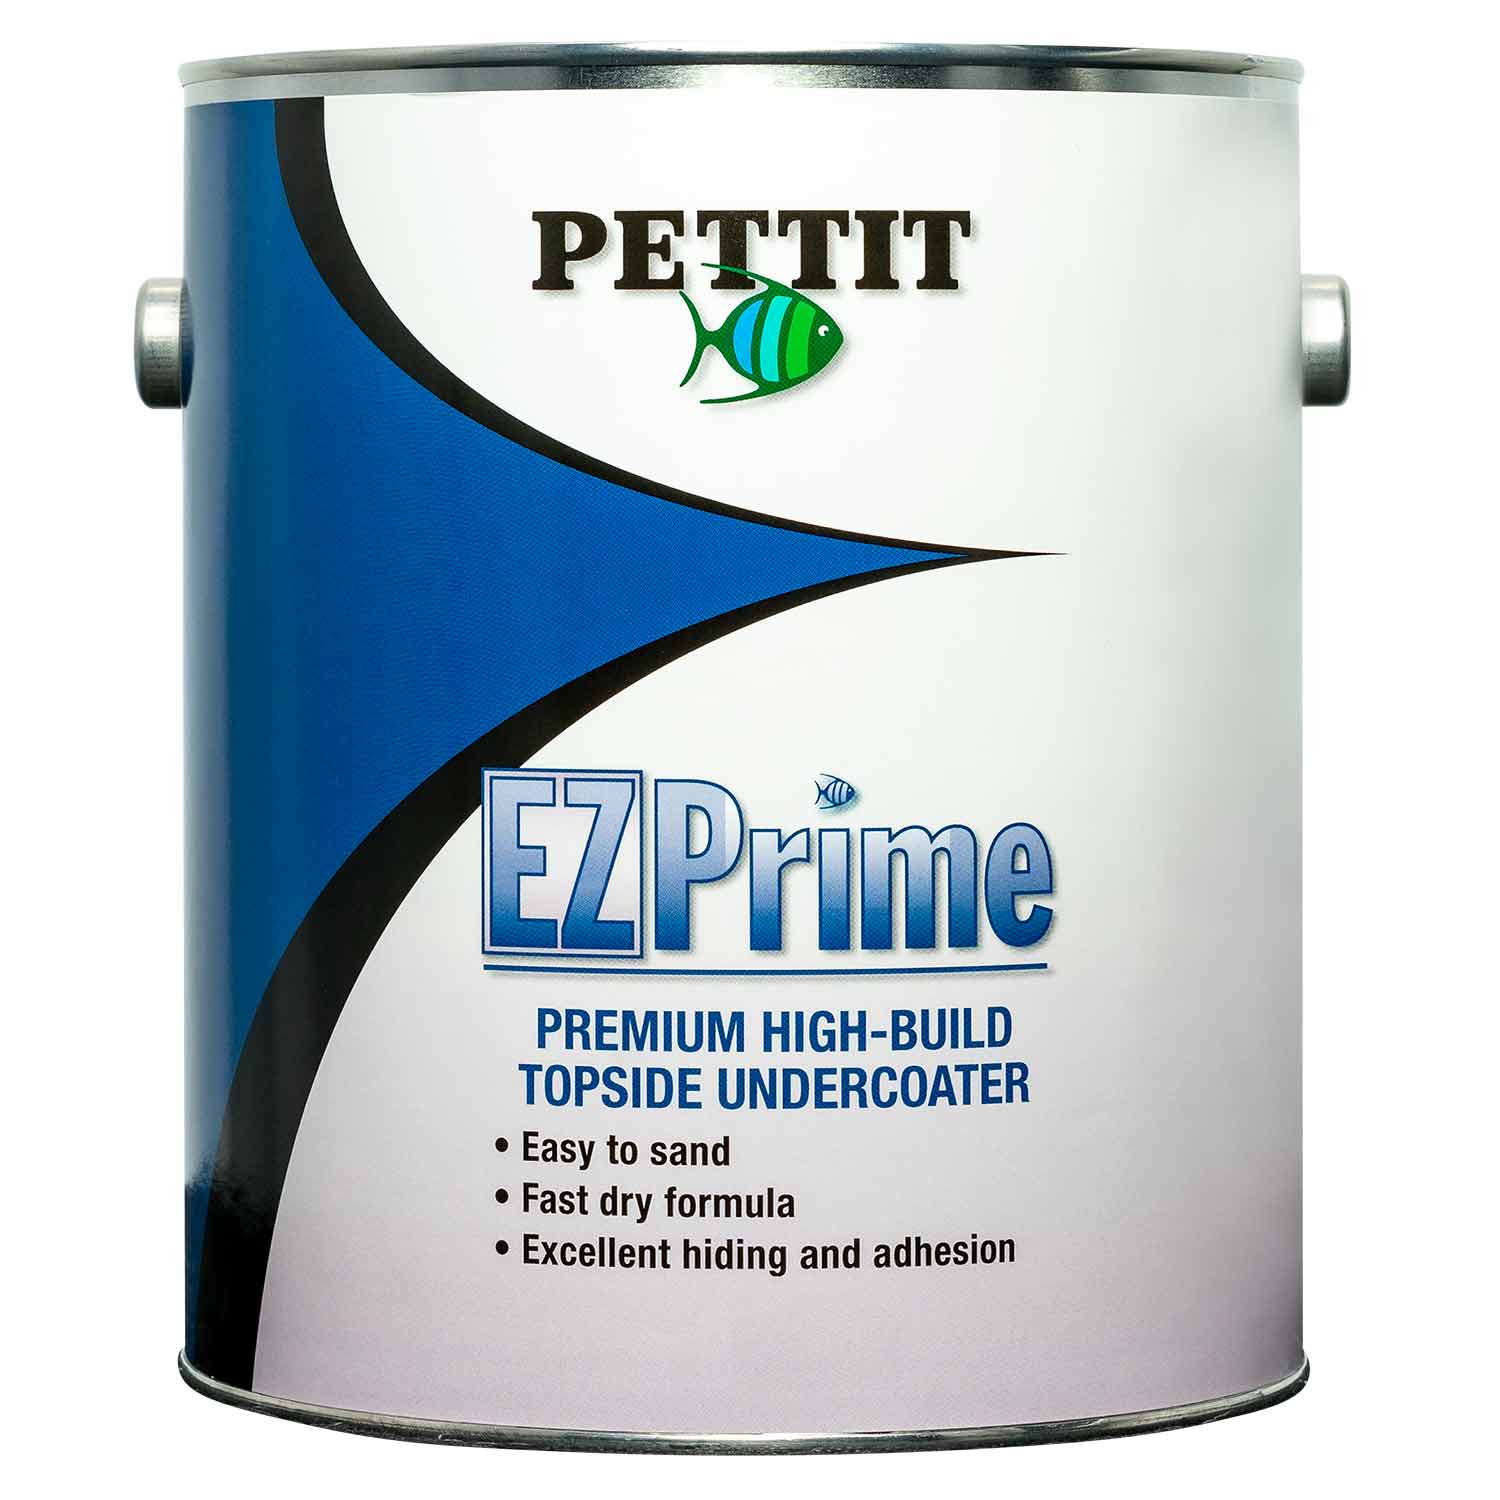 EZ Mix Plastic Cup – 8 oz. each – Paint Bull Supply